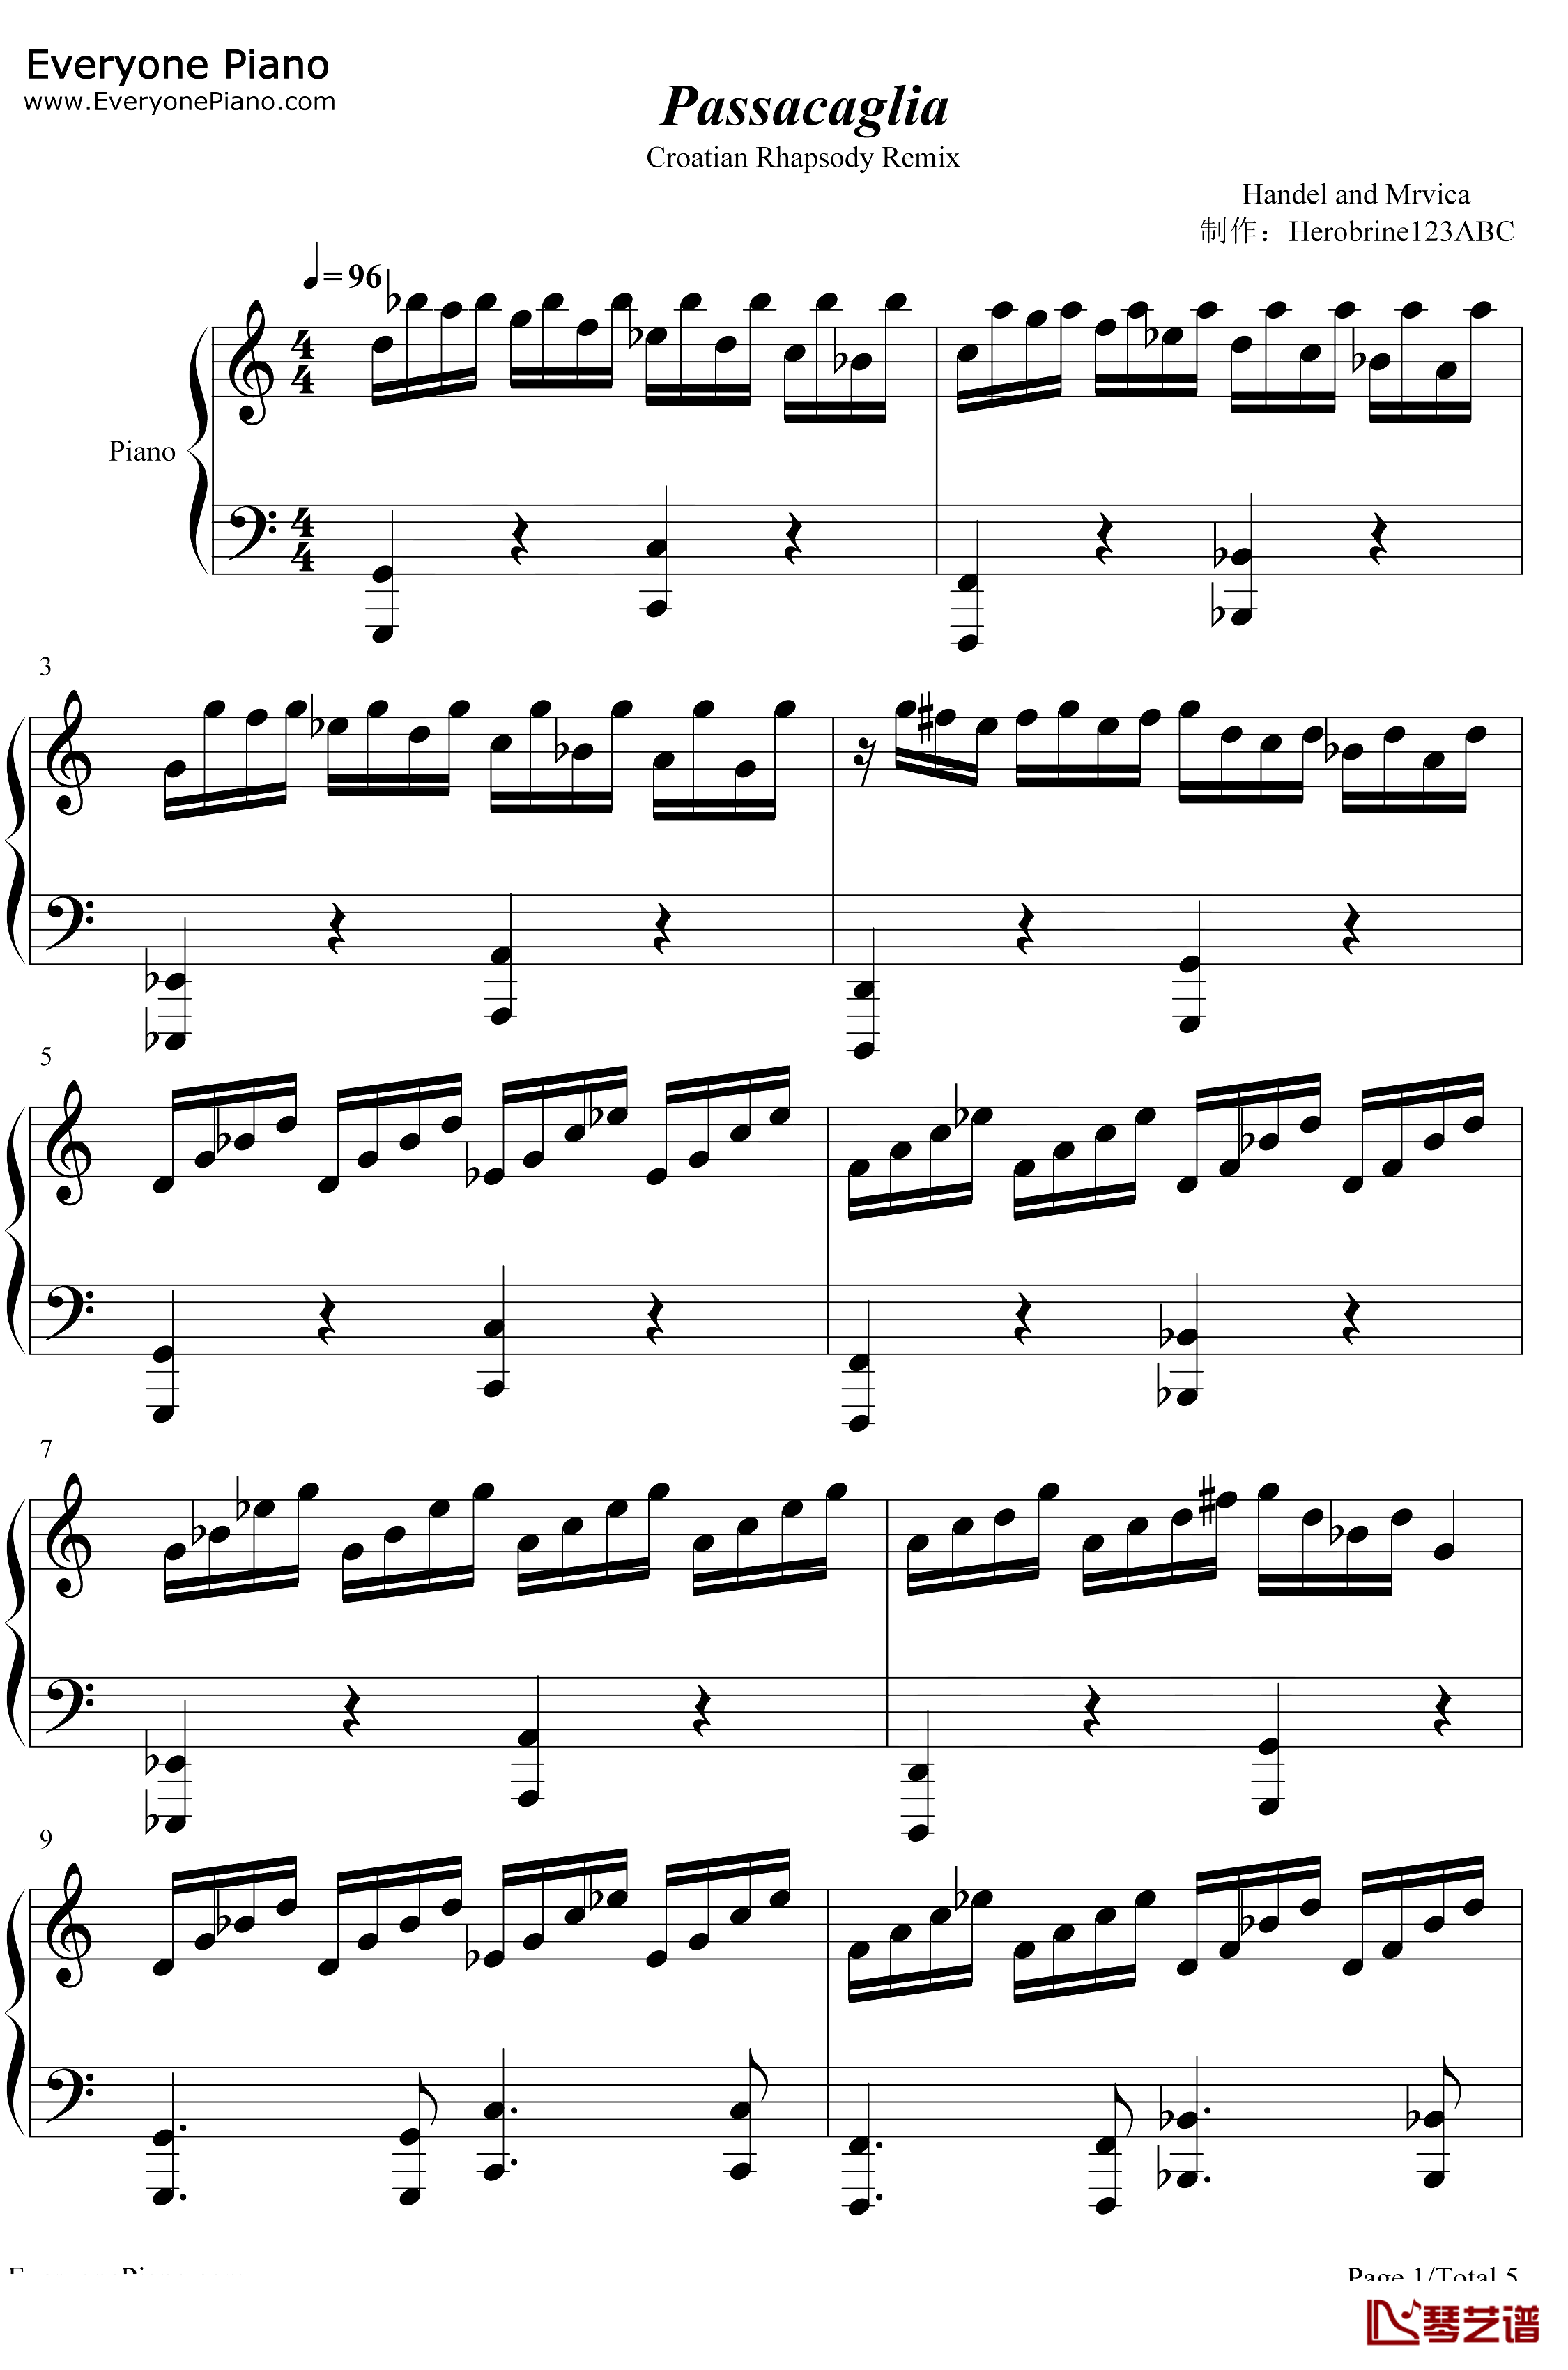 帕萨卡利亚克罗地亚变奏钢琴谱-Handel Mrvica-帕萨卡利亚克罗地亚变奏1